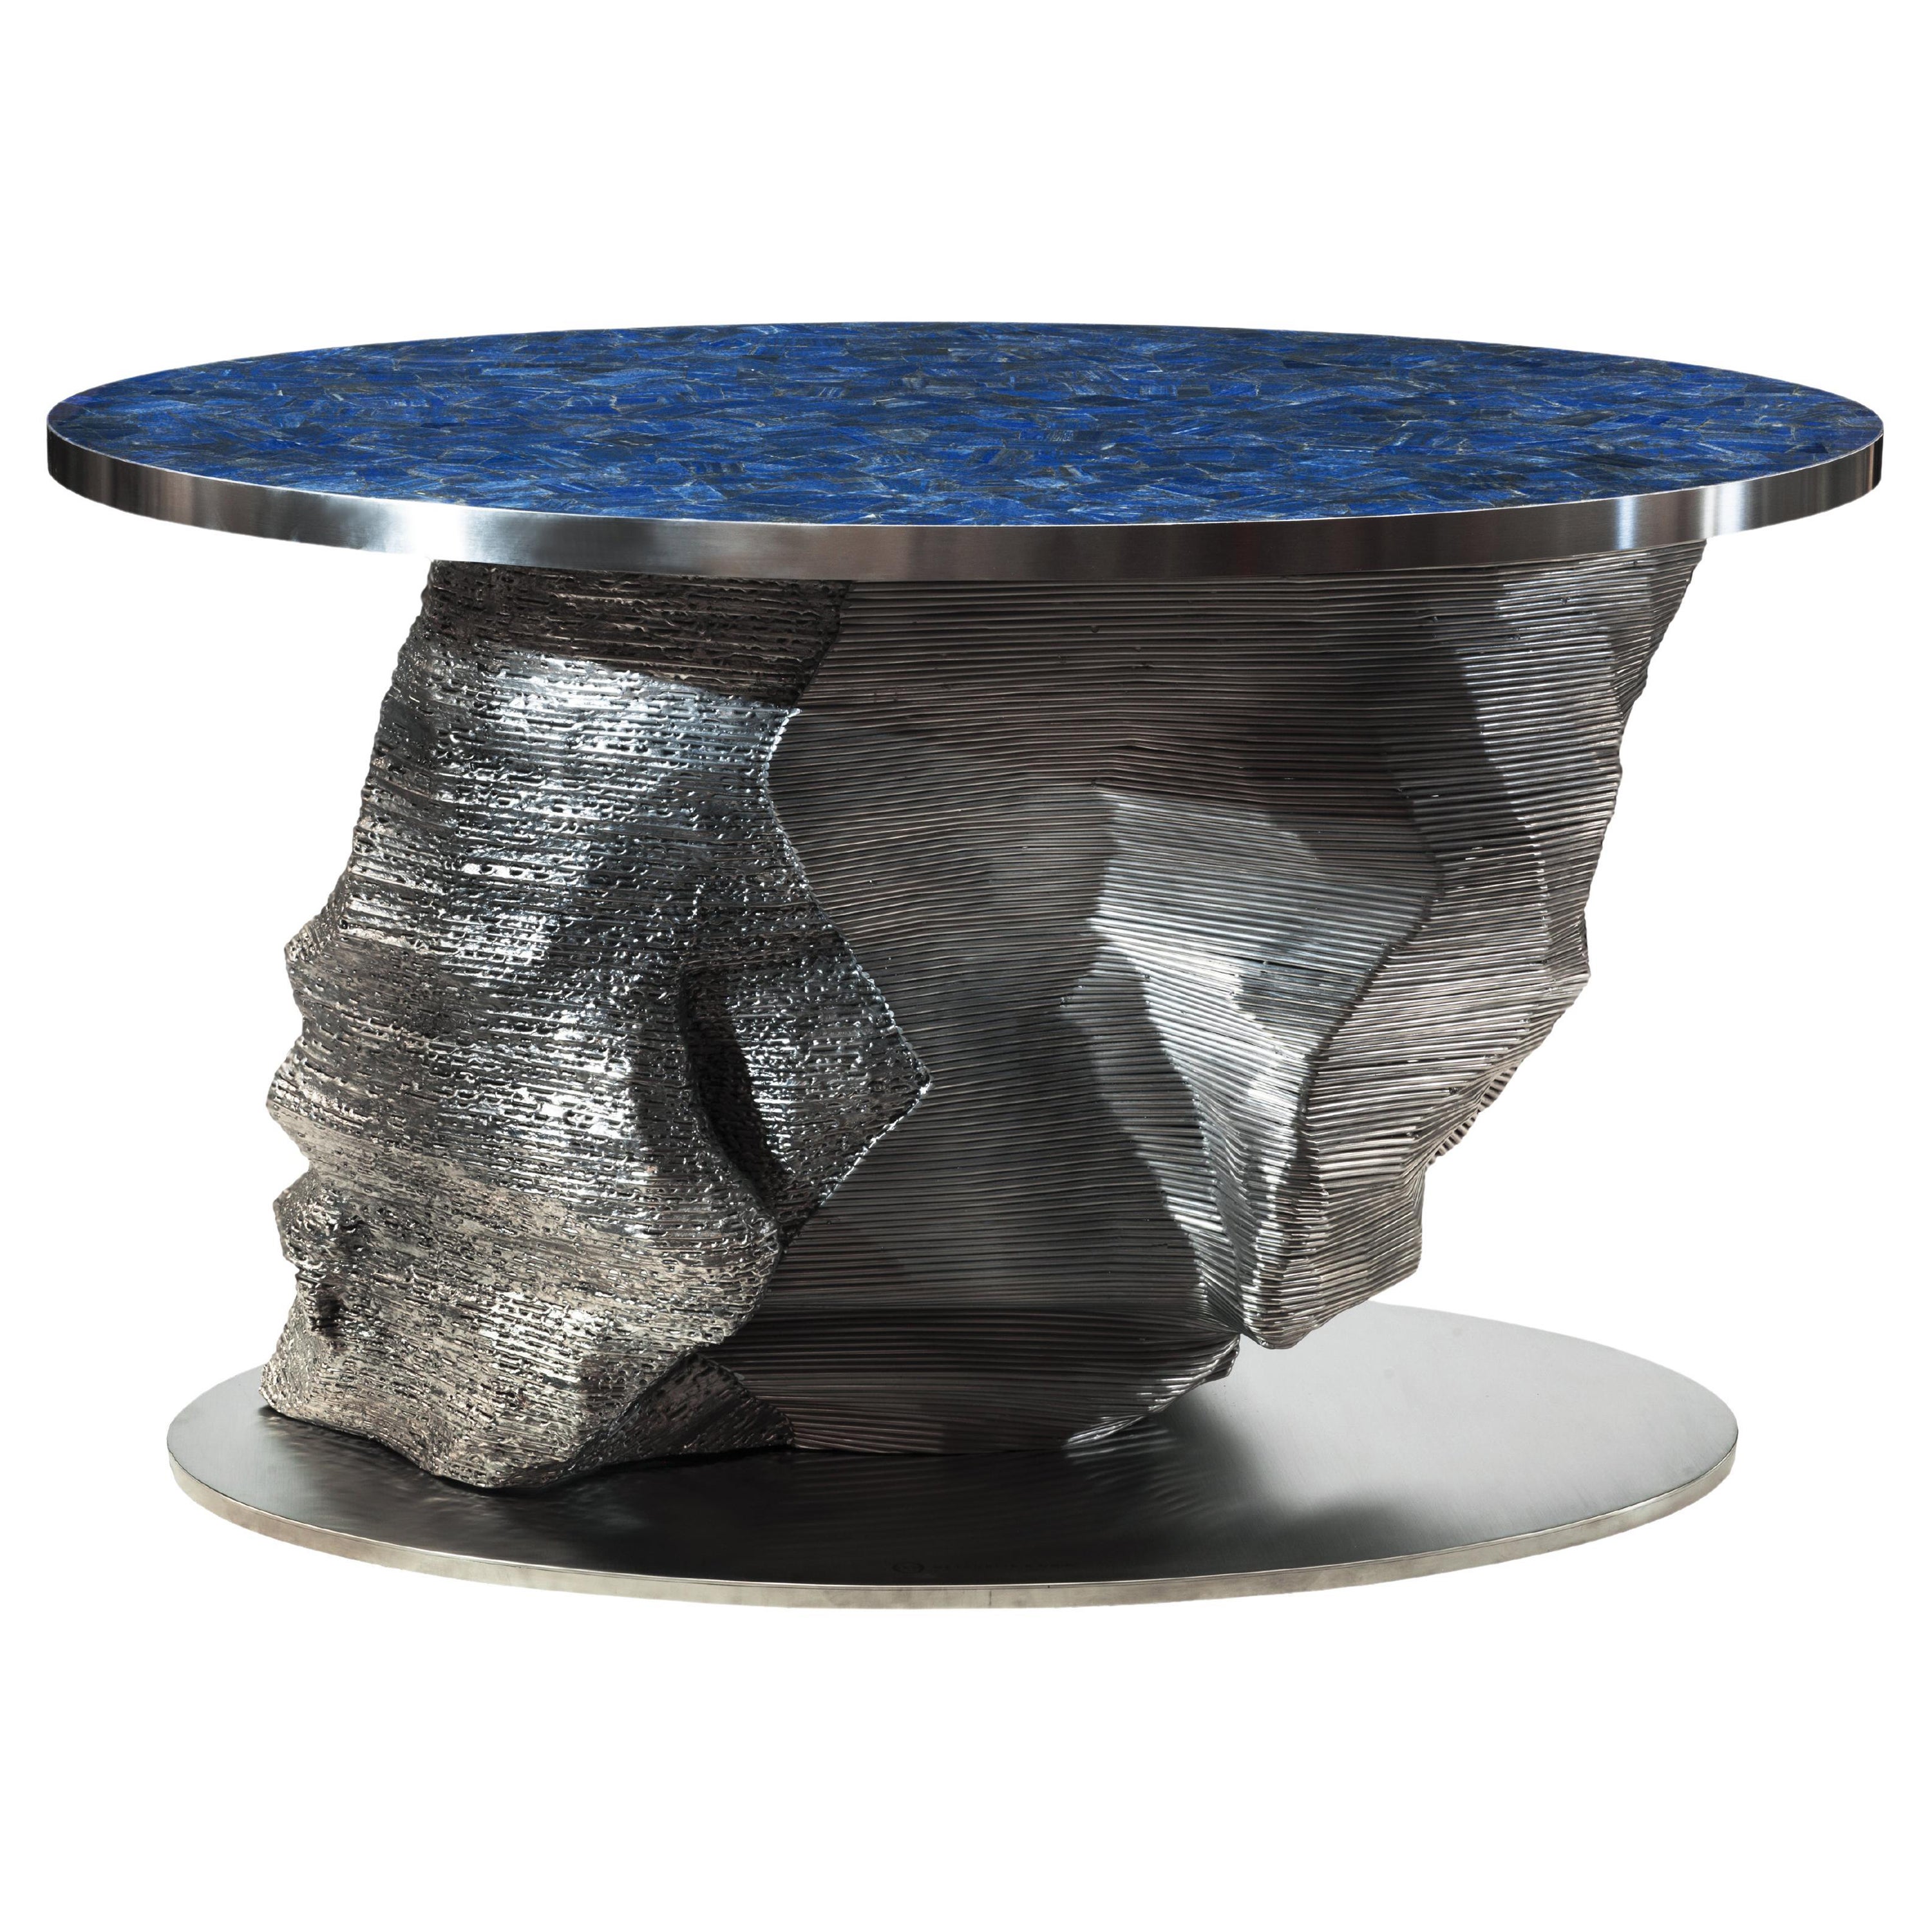 Lapis-Lazuli Gemstone "Meteorite" design by Giò Pozzi for Officina della Scala